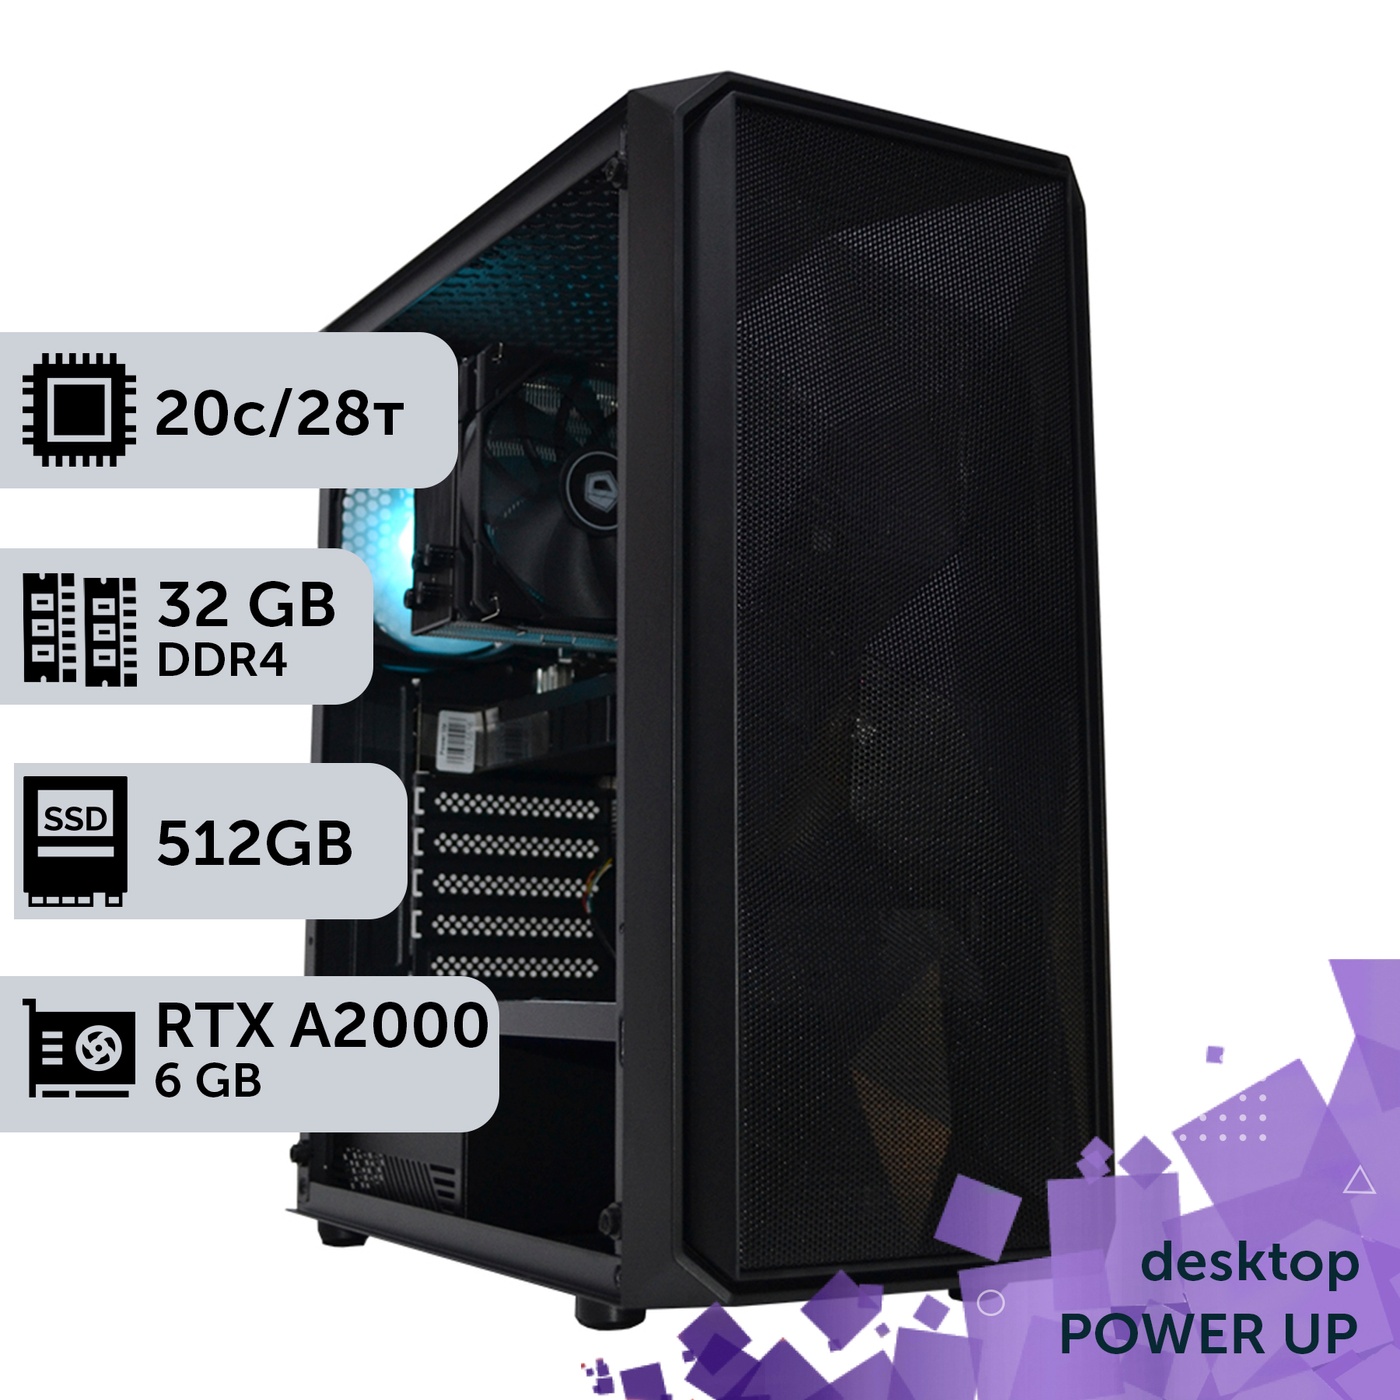 Рабочая станция PowerUp Desktop #311 Core i7 14700K/32 GB/SSD 512GB/NVIDIA Quadro RTX A2000 6GB